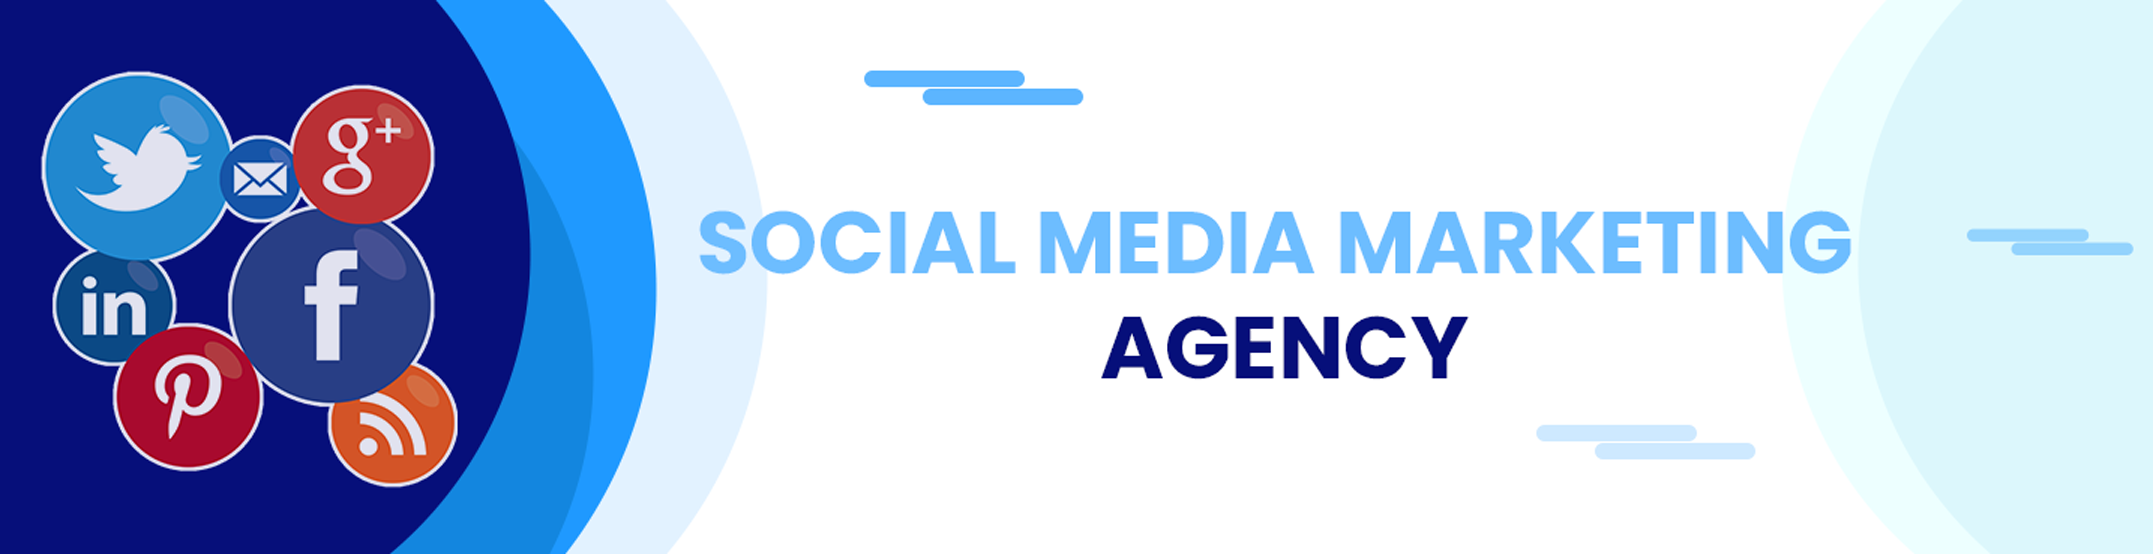 social media management agencies